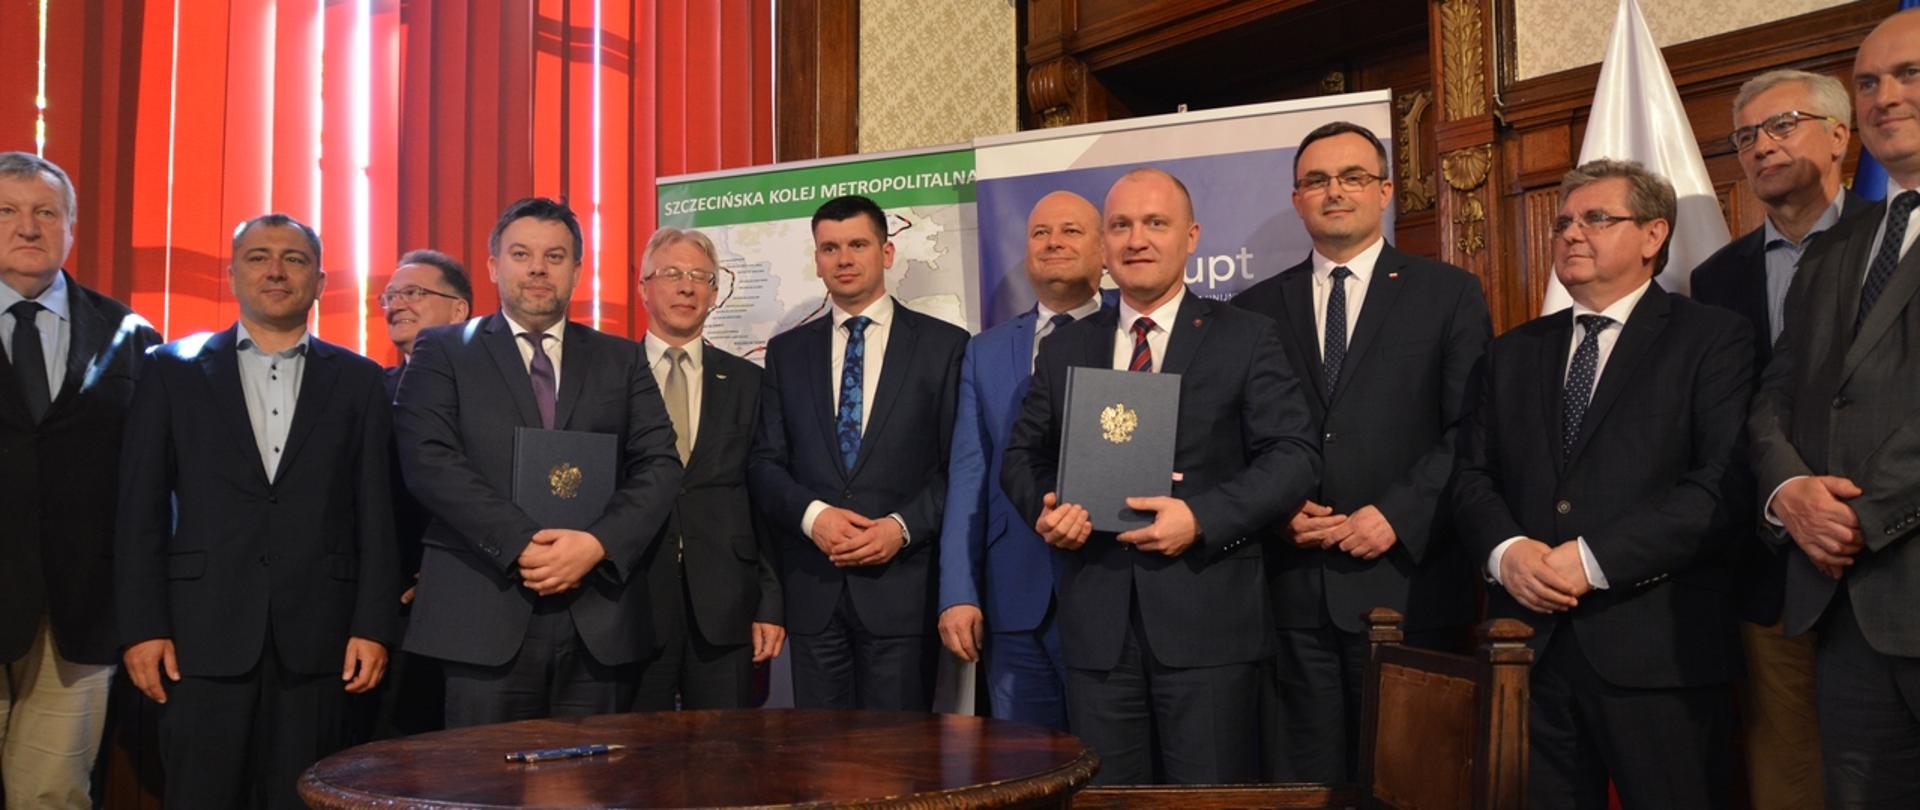 Podpisanie umowy na budowę Szczecińskiej Kolei Metropolitarnej 